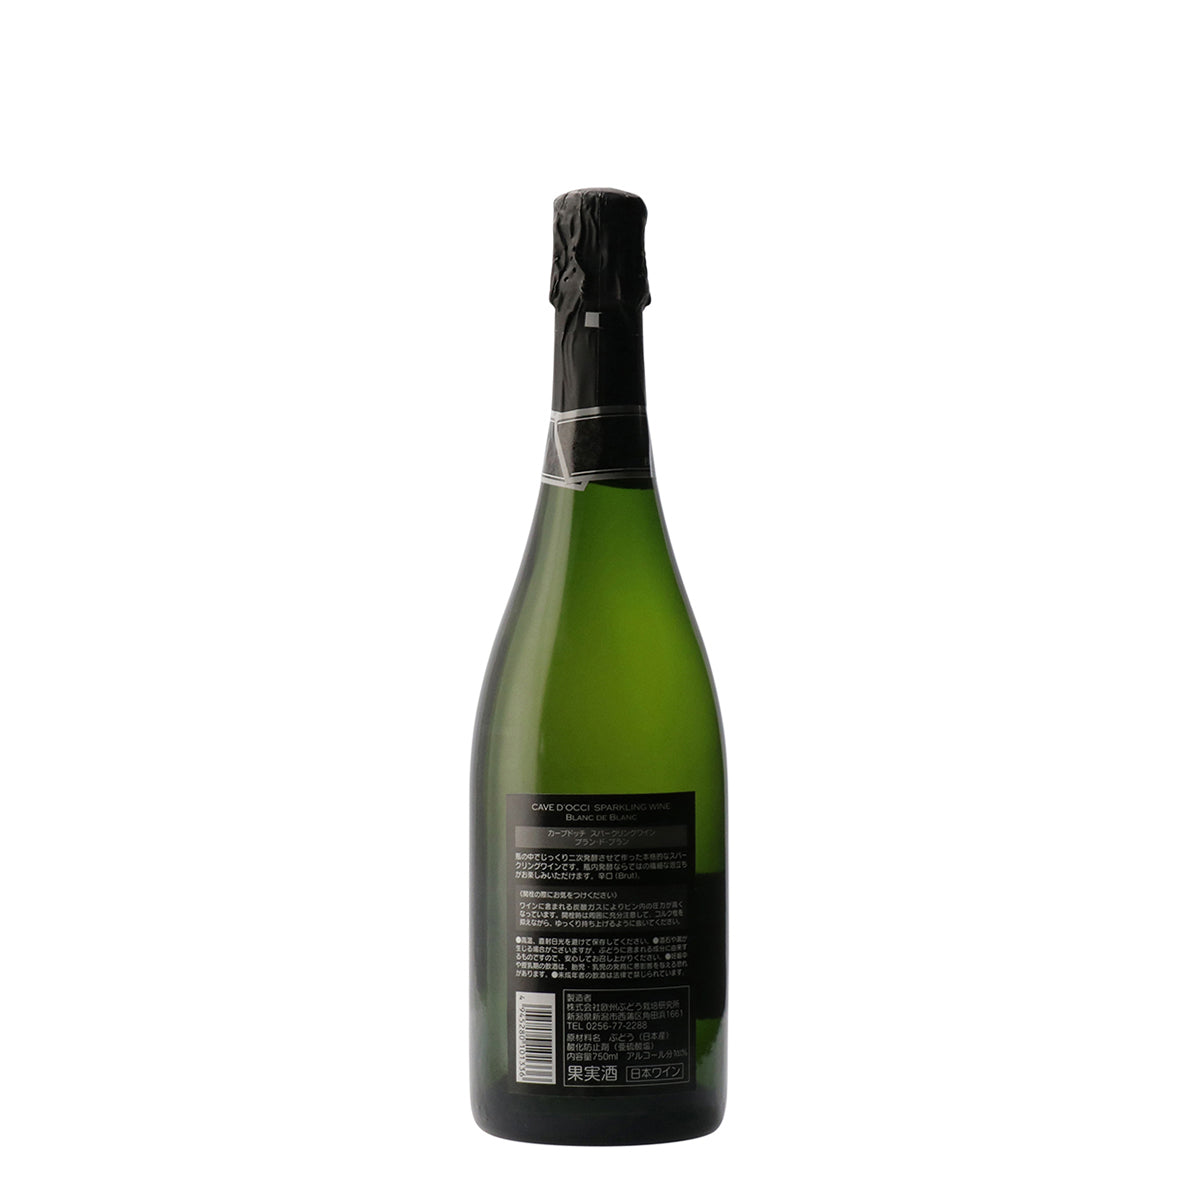 スパークリングワイン(ブラン・ド・ブラン) 2020 /カーブドッチ 